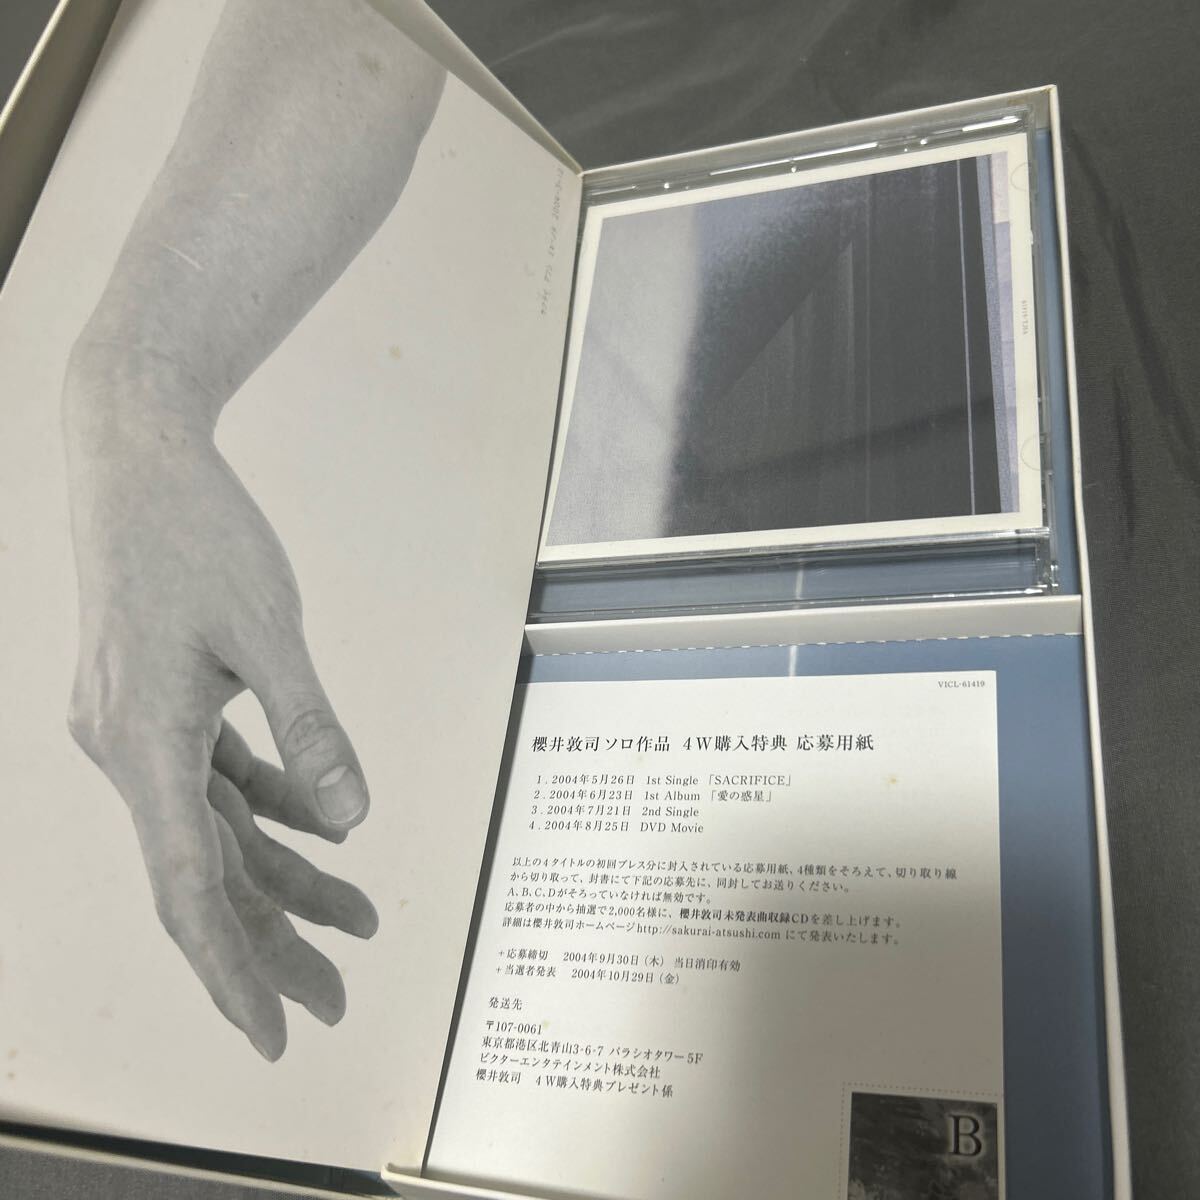  Sakurai .. love. планета первое издание BUCK-TICK First Solo альбом Limited Edition специальный BOX specification ограничение запись 